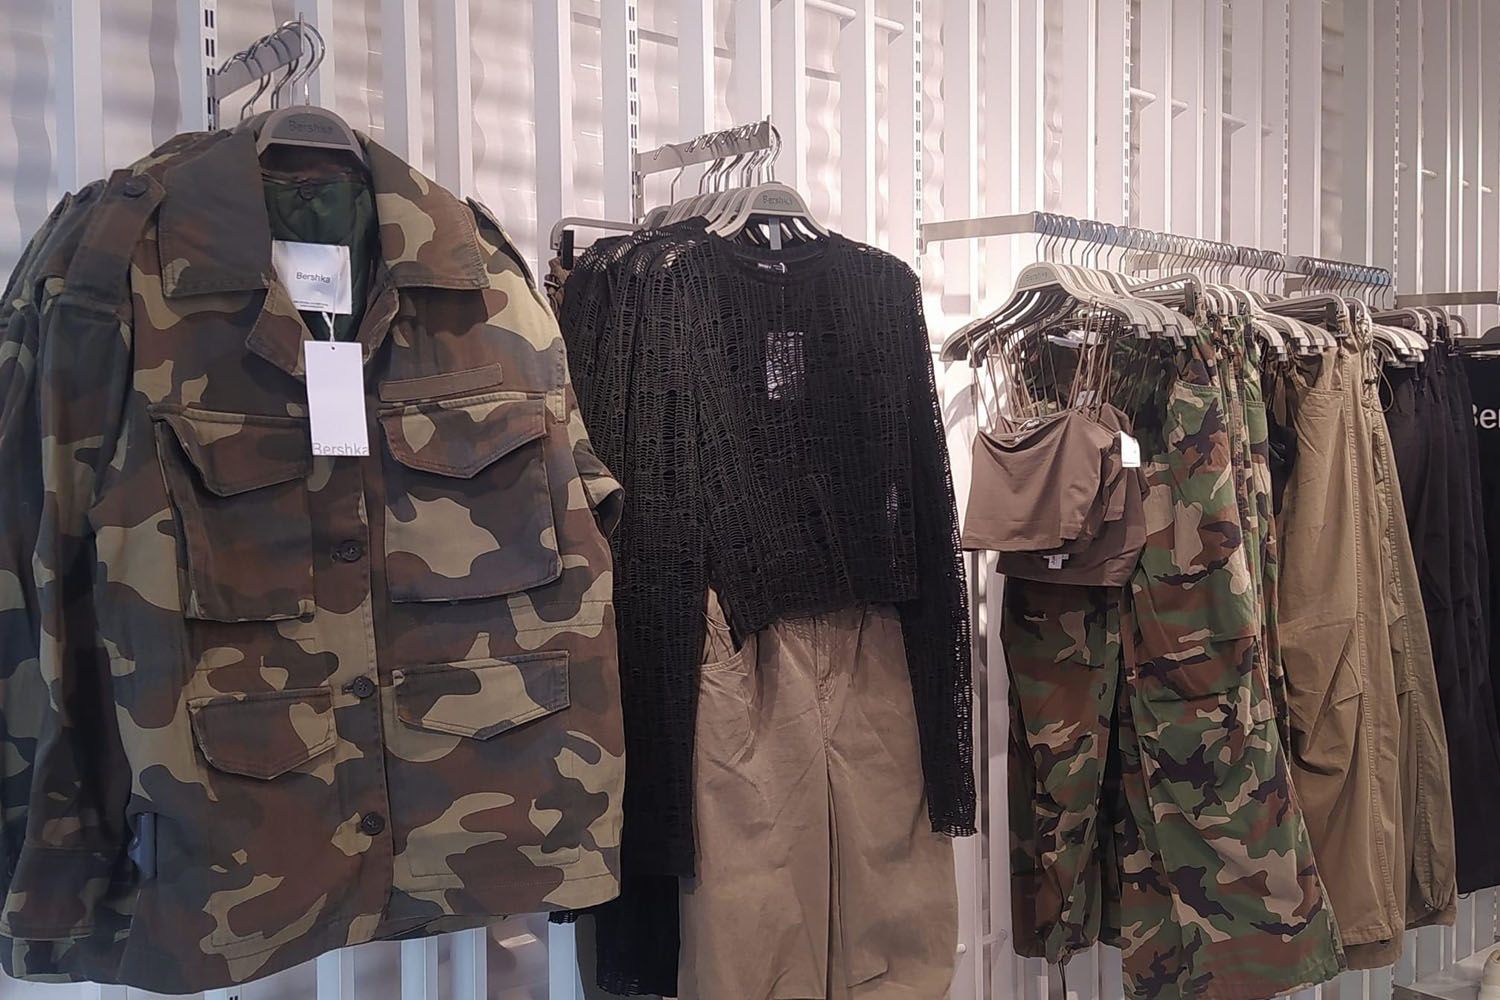 Polémica en Twitter por la ropa de camuflaje que vende Bershka en plena  guerra de Ucrania